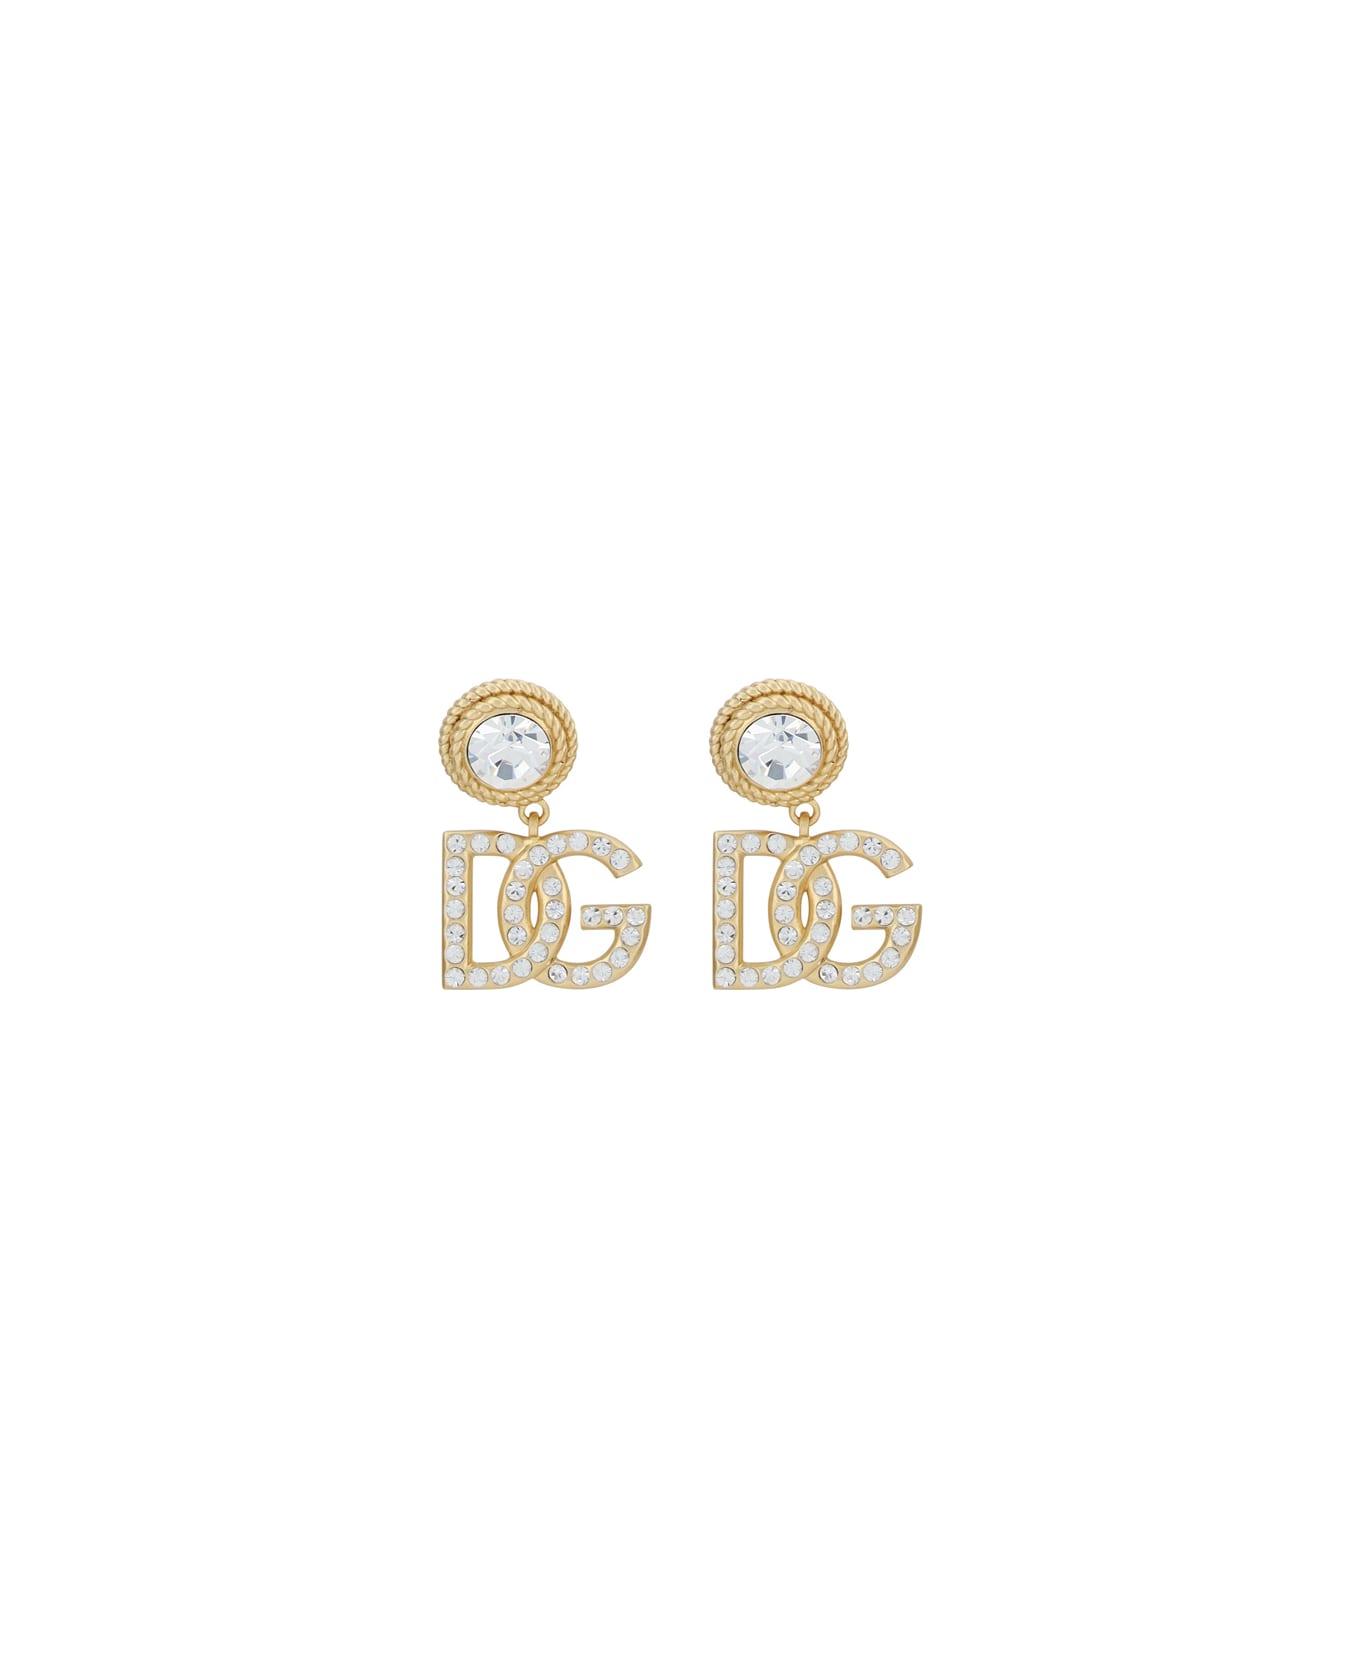 Dolce & Gabbana Dg Diva Earrings - Gold イヤリング